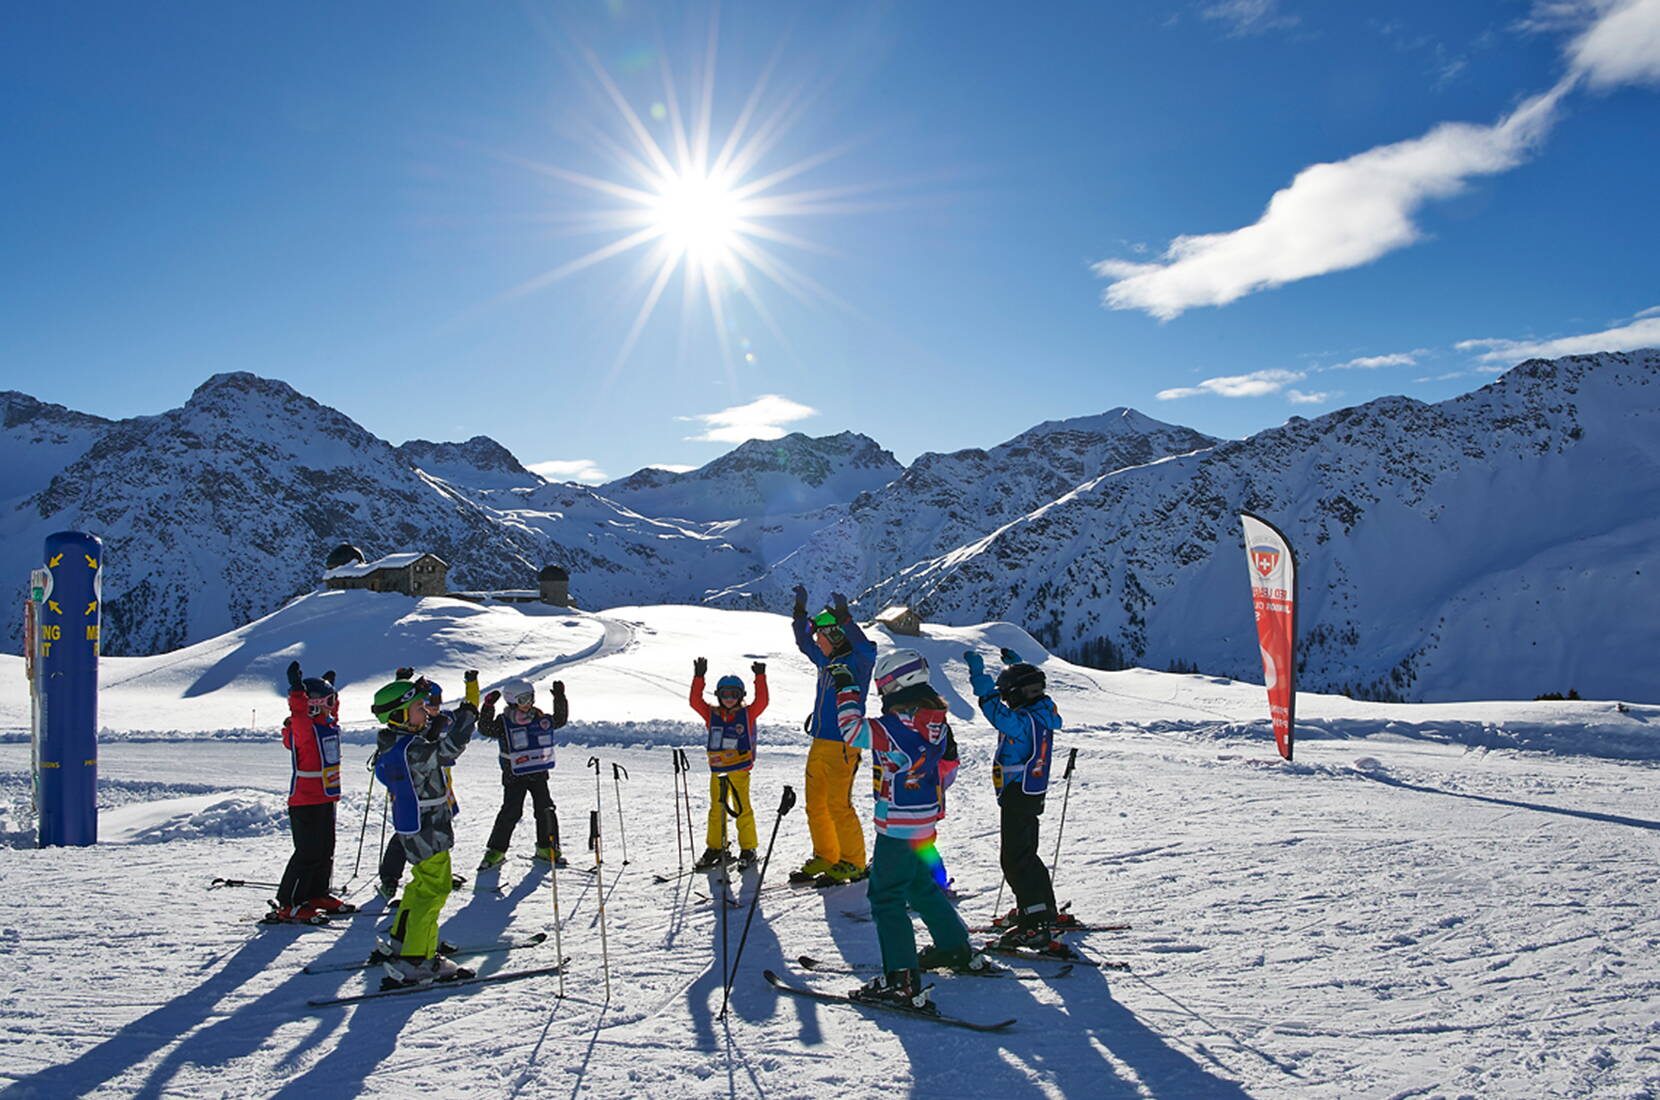 Excursion en famille à Arosa Lenzerheide. La station de sports d'hiver d'Arosa Lenzerheide se réjouit de vous accueillir dans ses montagnes et de faire battre votre cœur dans notre paradis des sports d'hiver.
